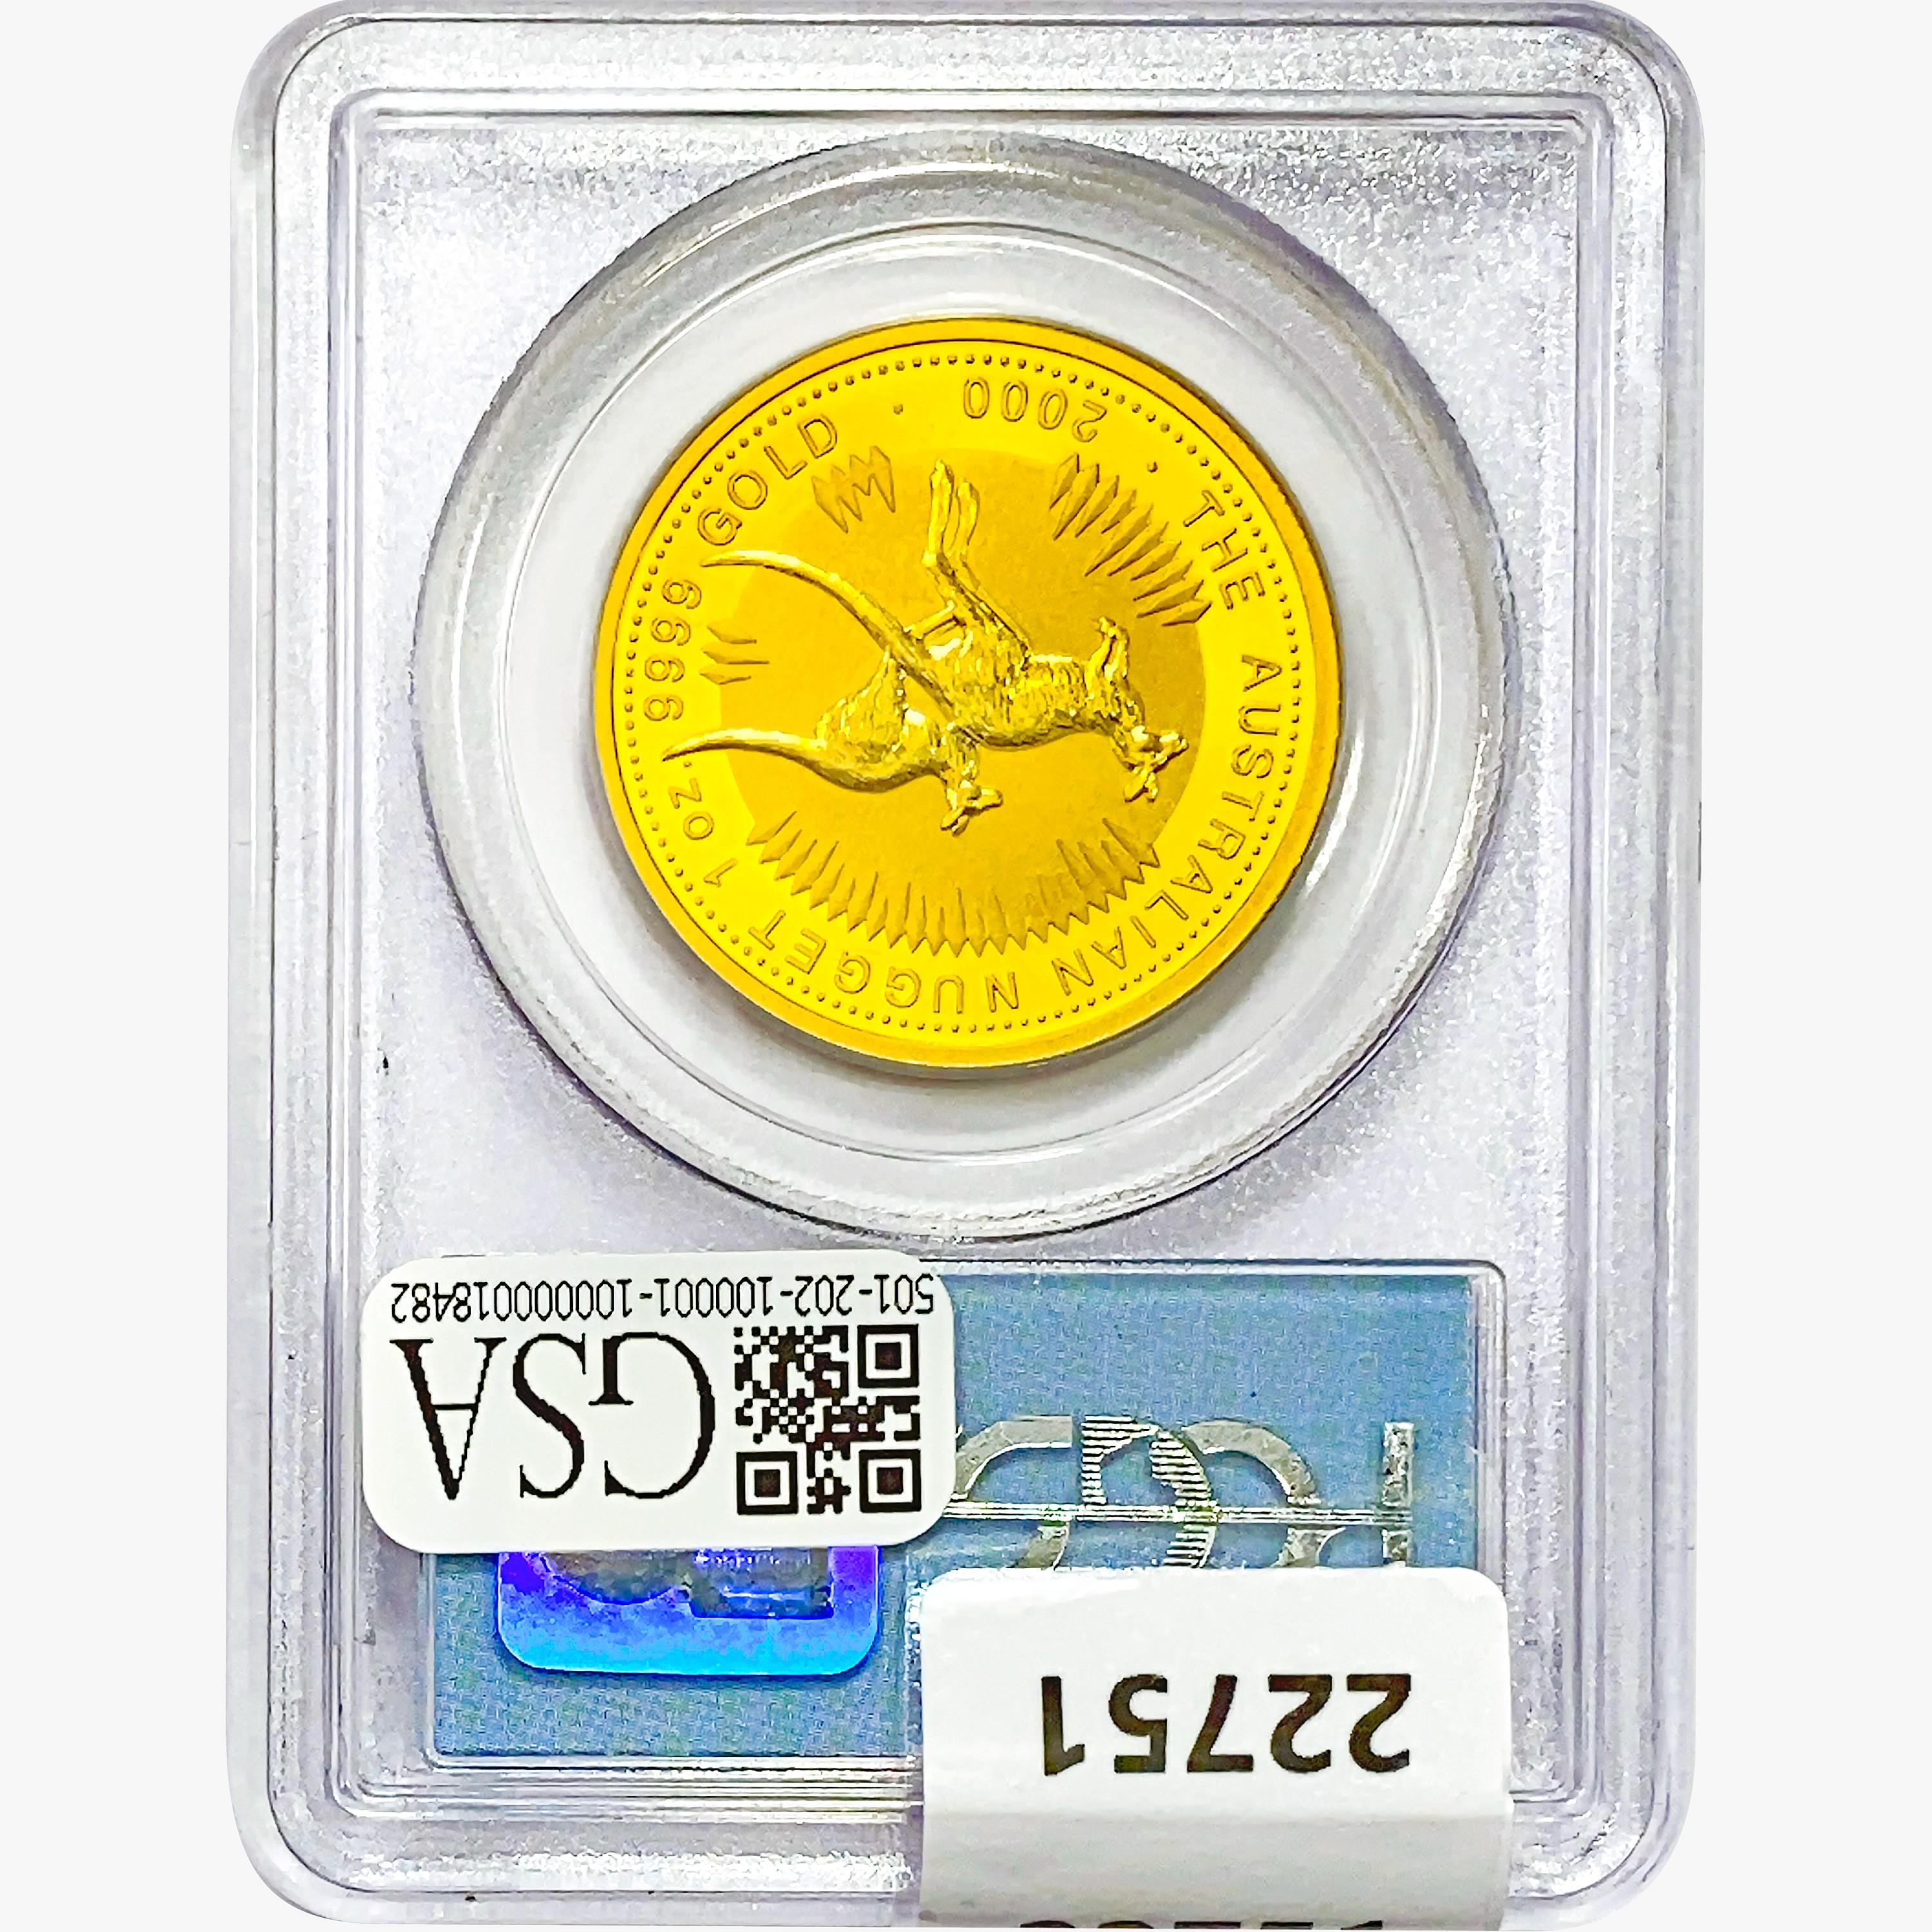 2000 1oz. Gold Australia $100 WTC PCGS GemUNC